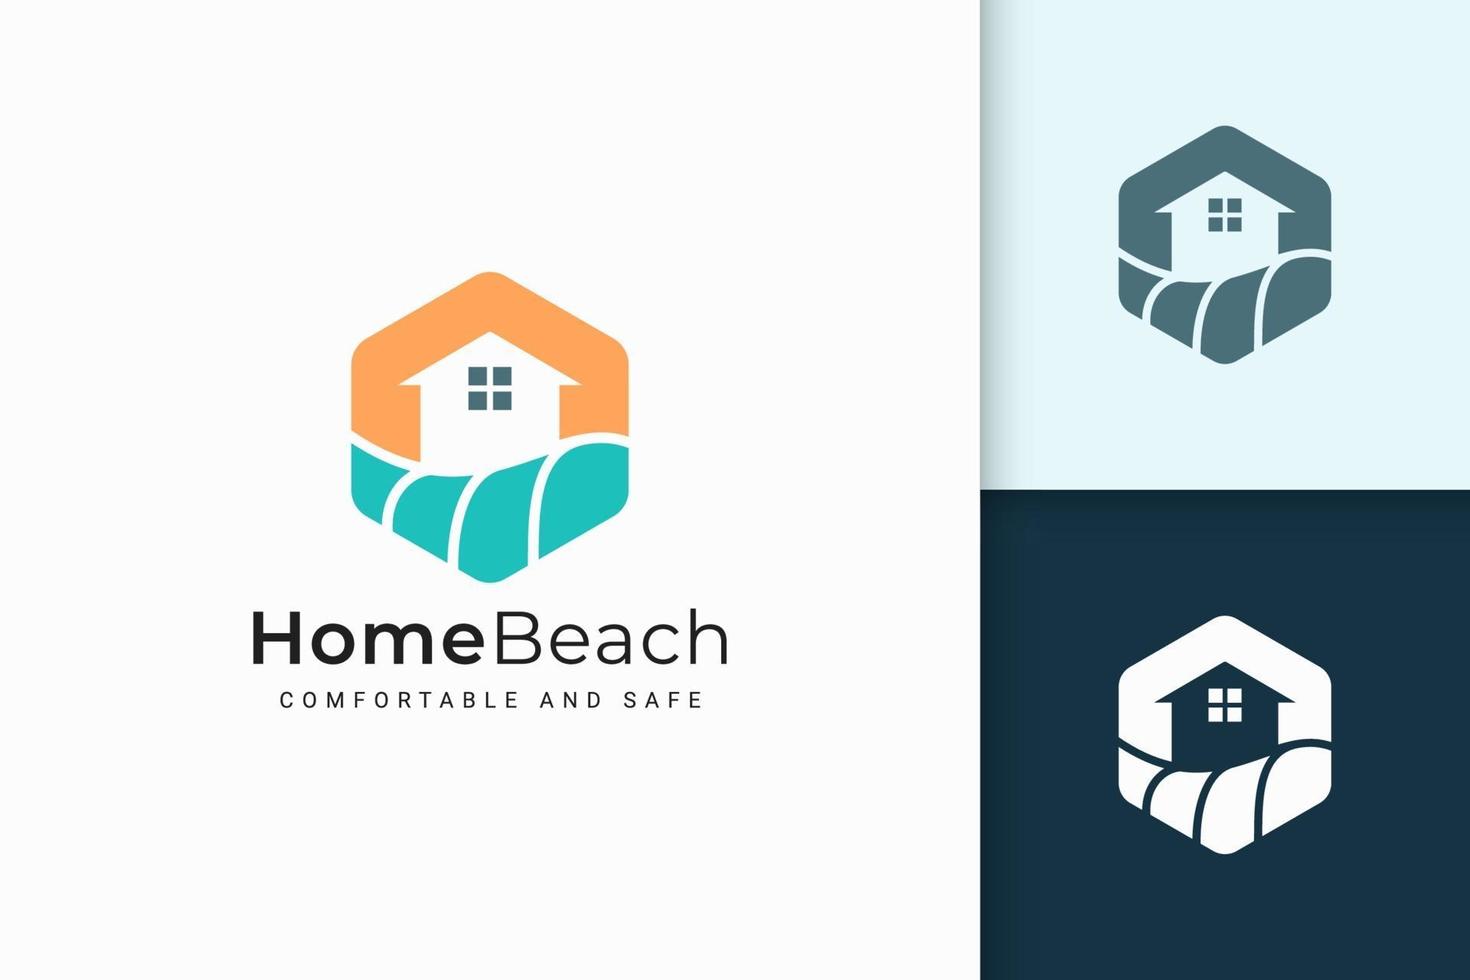 logotipo de casa ou resort à beira-mar com forma abstrata para imóveis vetor